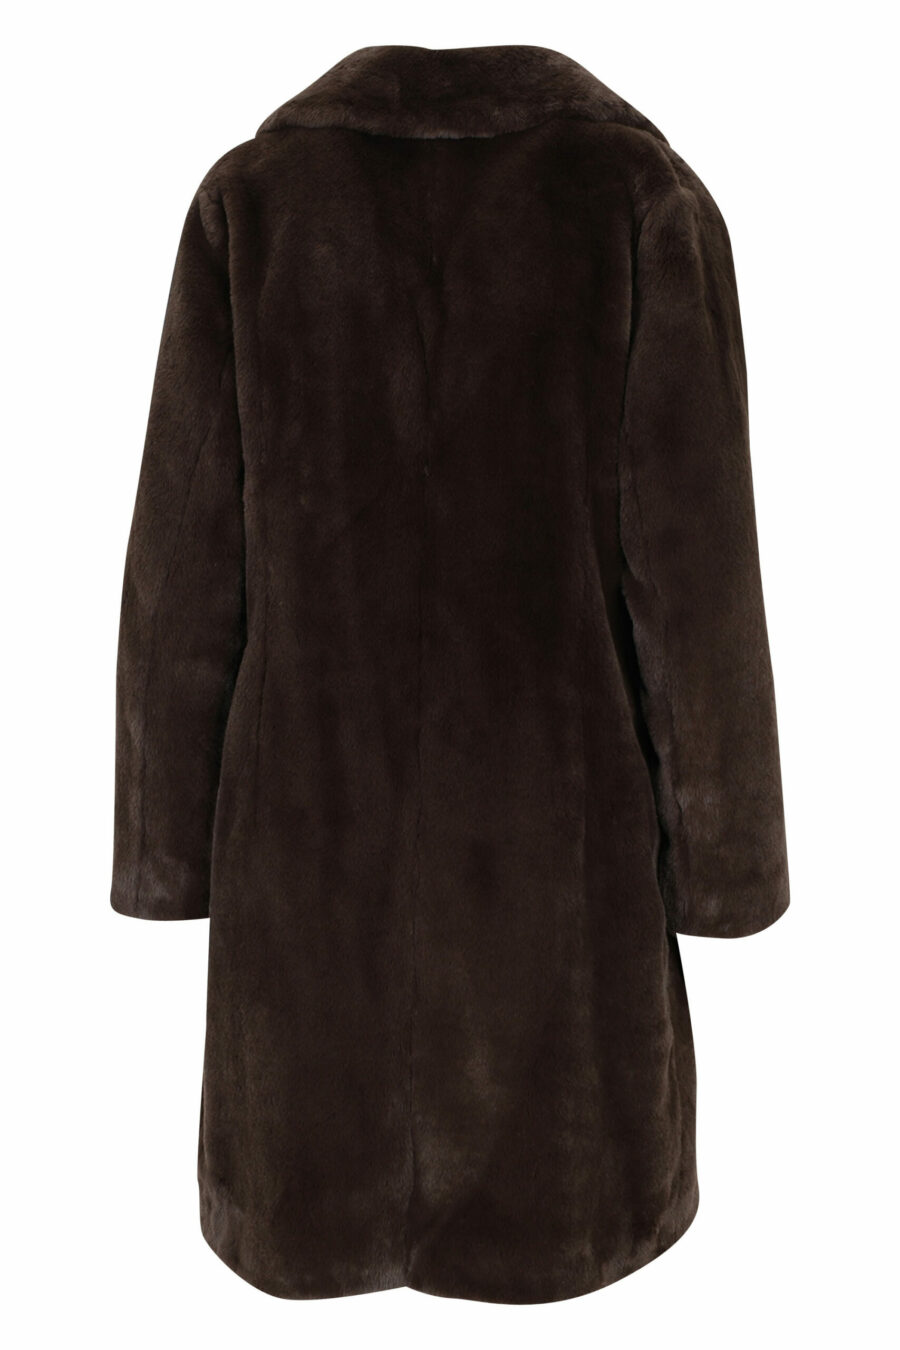 Abrigo marrón con pelo sintético efecto castor y forro interior monograma - 8055721726878 2 scaled